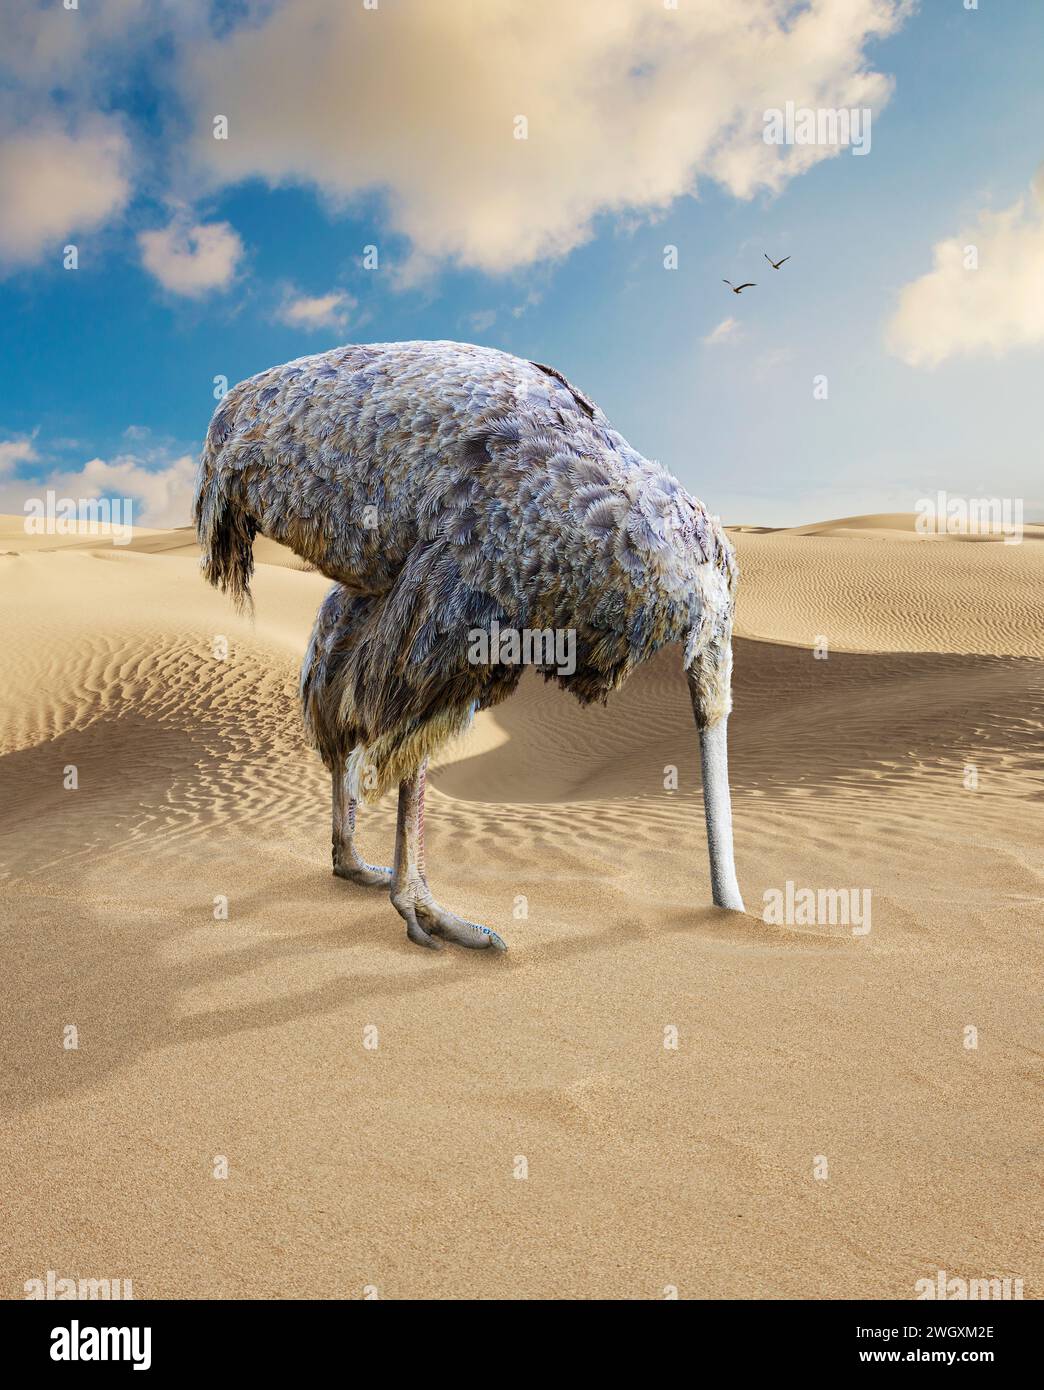 Une autruche cache sa tête dans le sable dans une image sur l'évitement. Banque D'Images